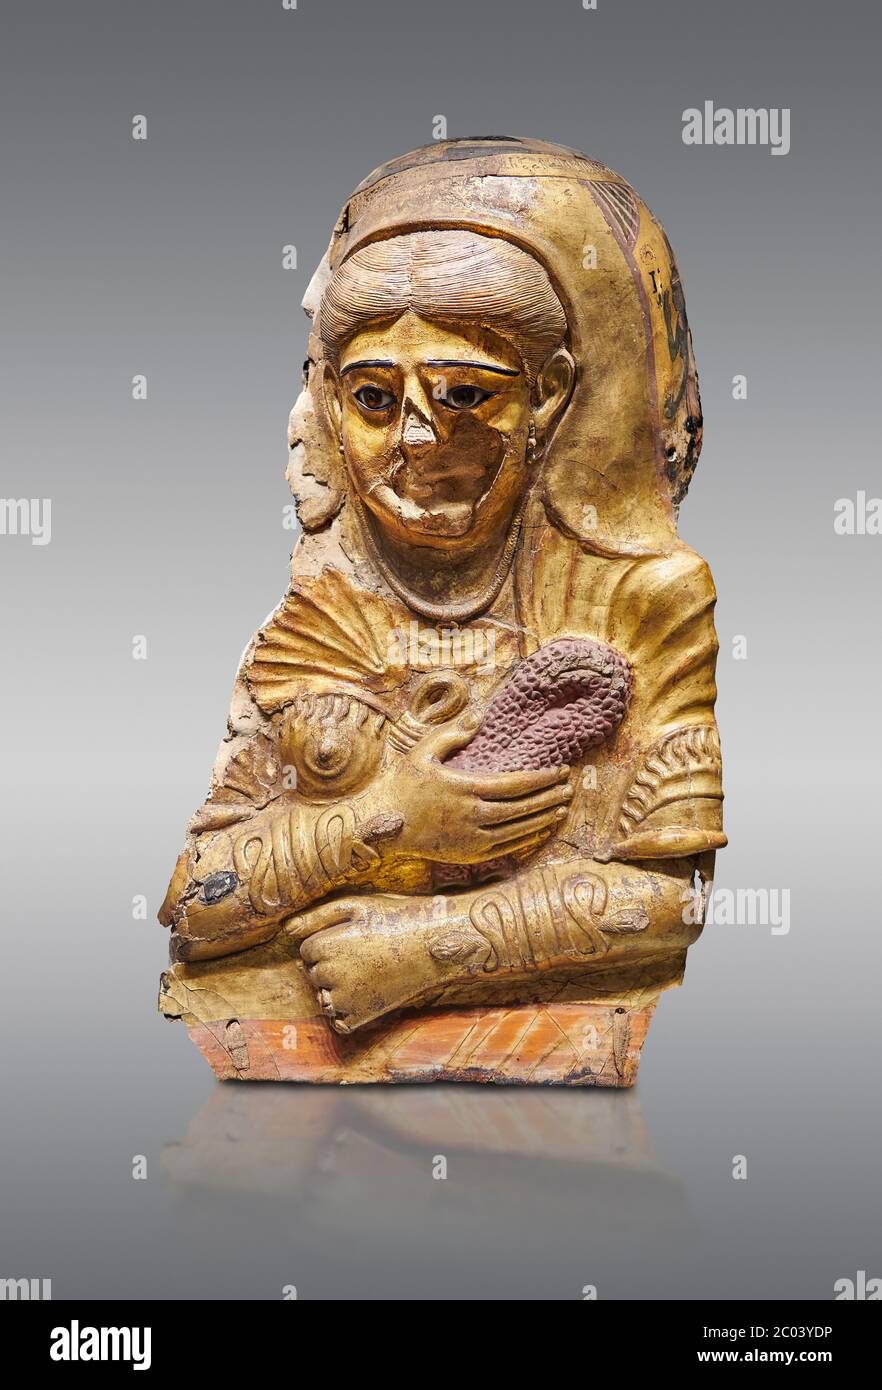 Alte ägyptische römische weibliche Mumie Maske, Kalkstein, römische Periode, 2. Jahrhundert n. Chr., Hawara, Ägyptisches Museum, Turin. Grauer Hintergrund Dies ist ein bemerkenswertes Stockfoto